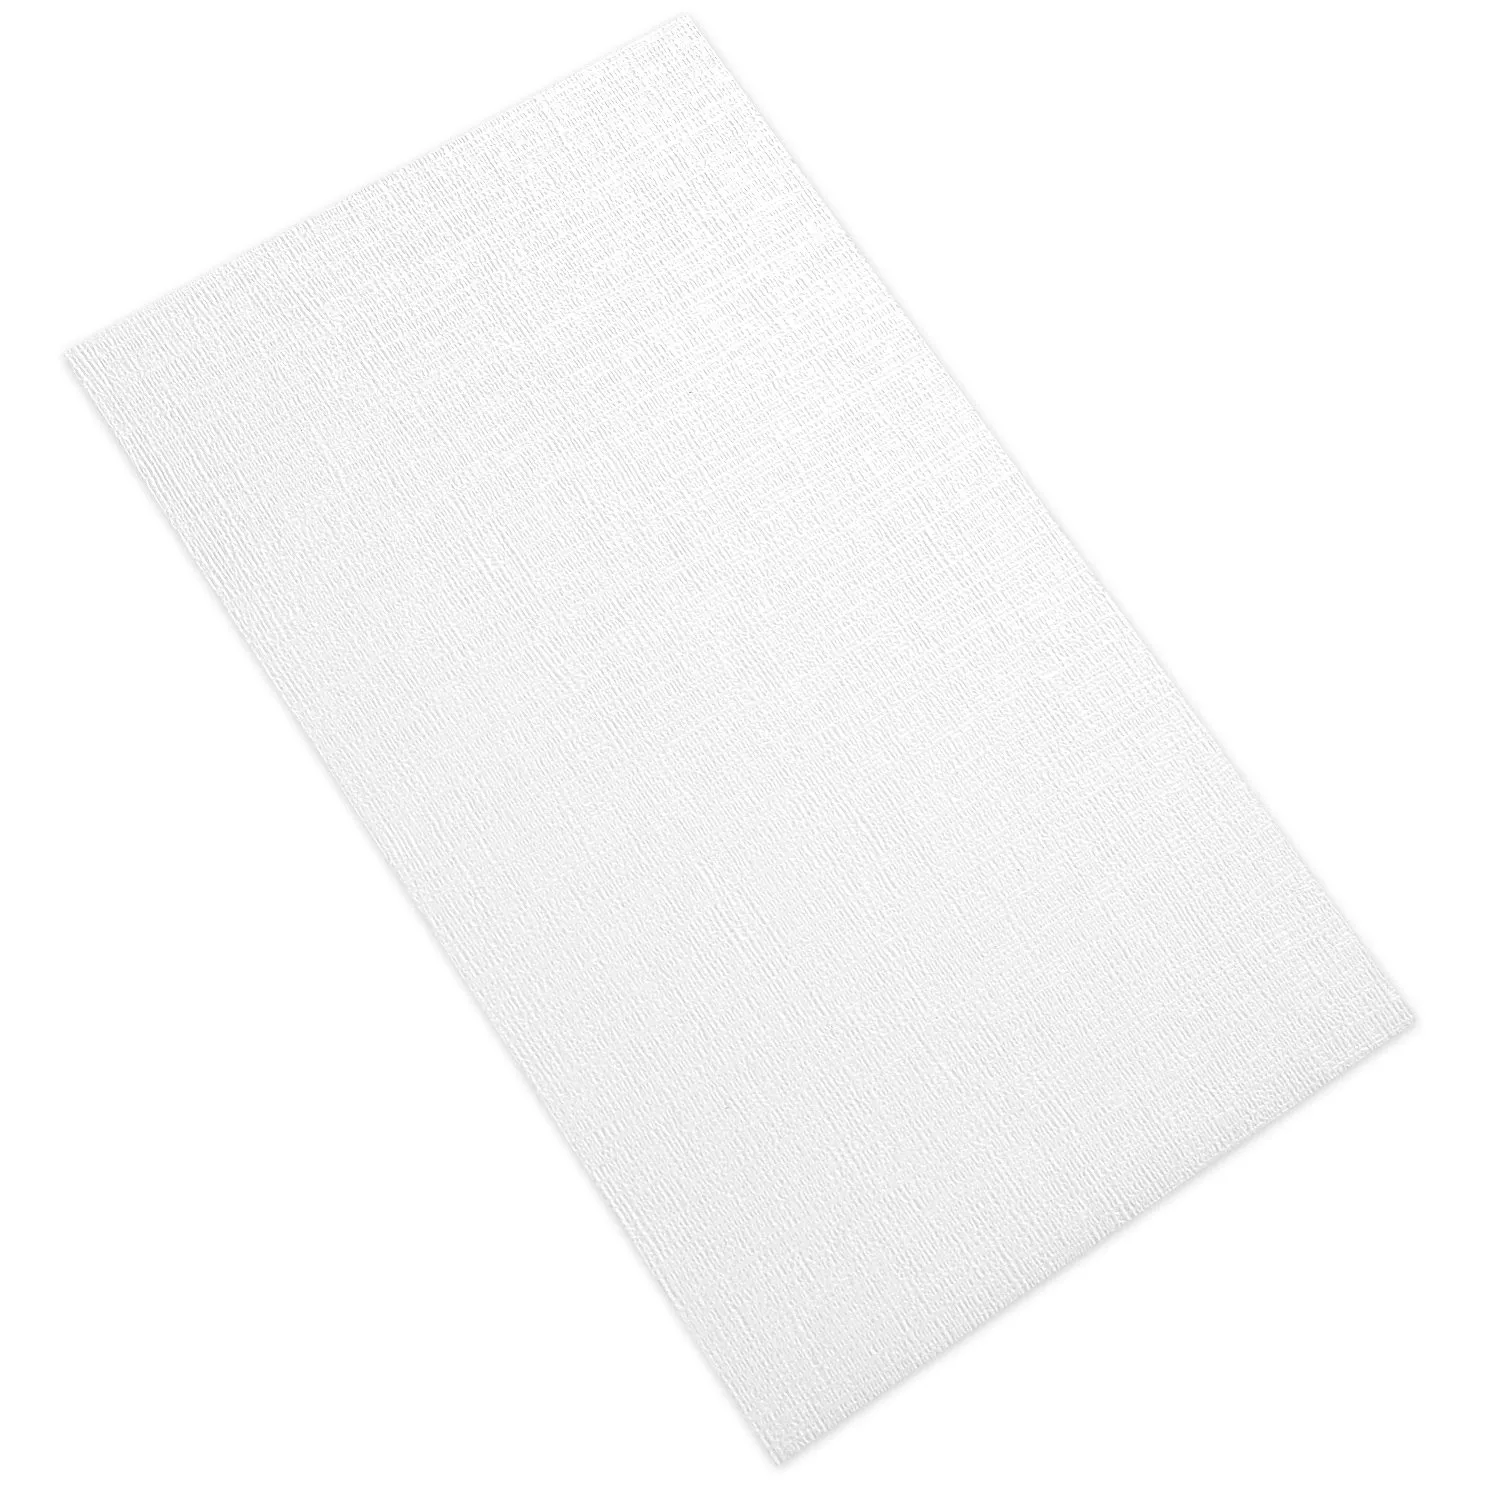 Fali Csempe Vulcano Texture Dekoráció Fehér Deres 60x120cm